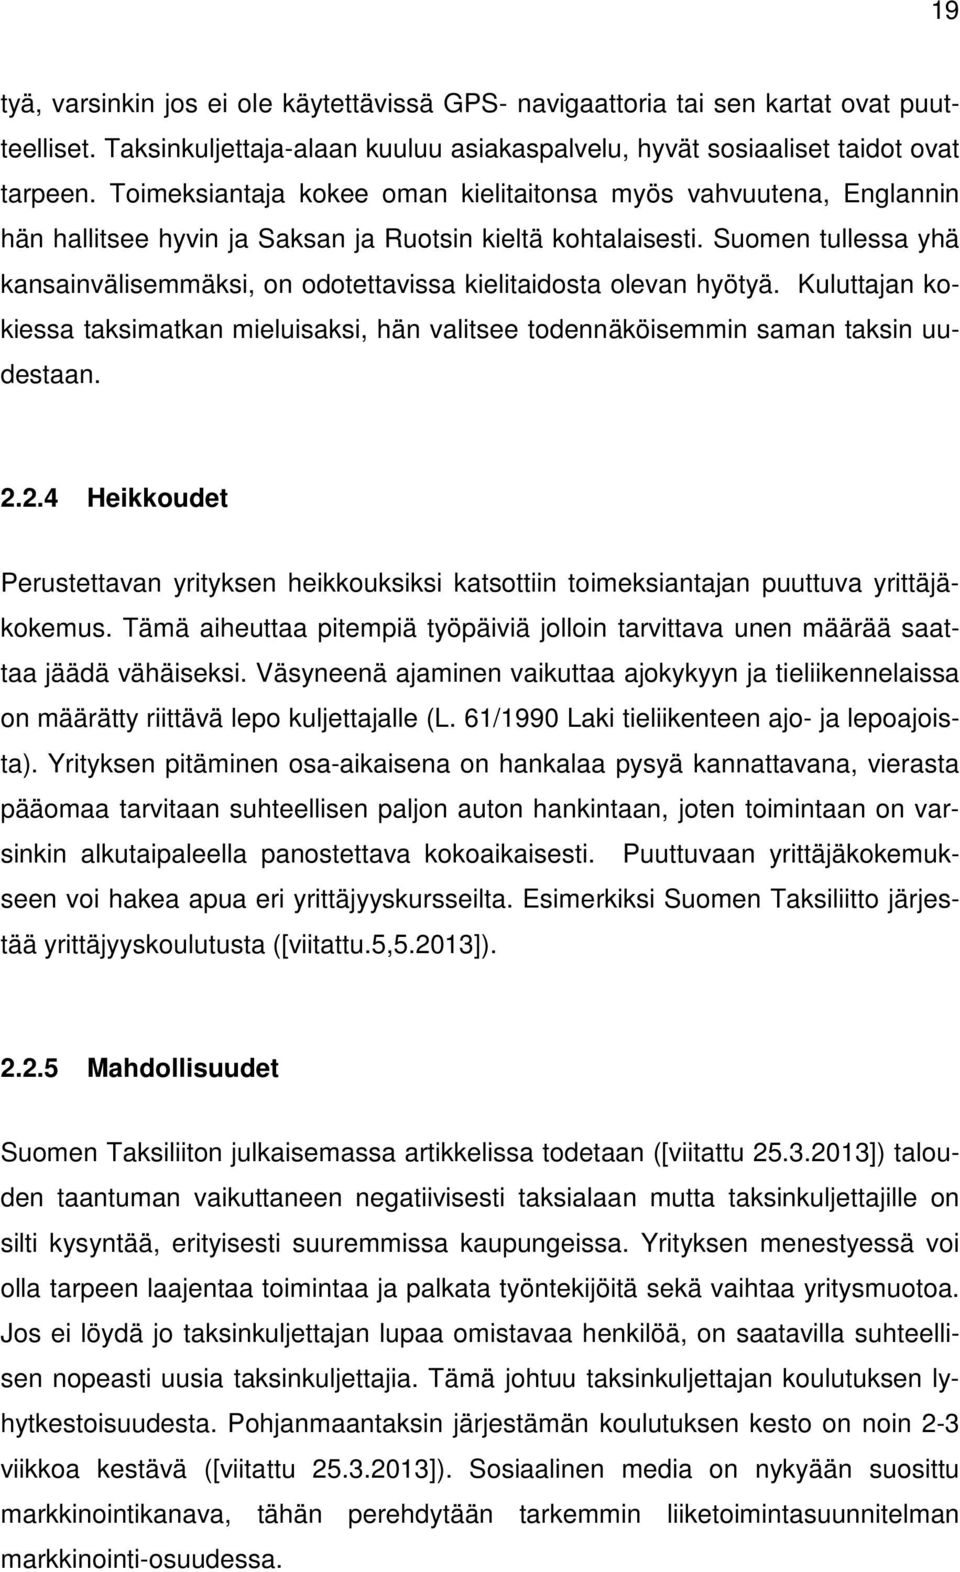 Suomen tullessa yhä kansainvälisemmäksi, on odotettavissa kielitaidosta olevan hyötyä. Kuluttajan kokiessa taksimatkan mieluisaksi, hän valitsee todennäköisemmin saman taksin uudestaan. 2.